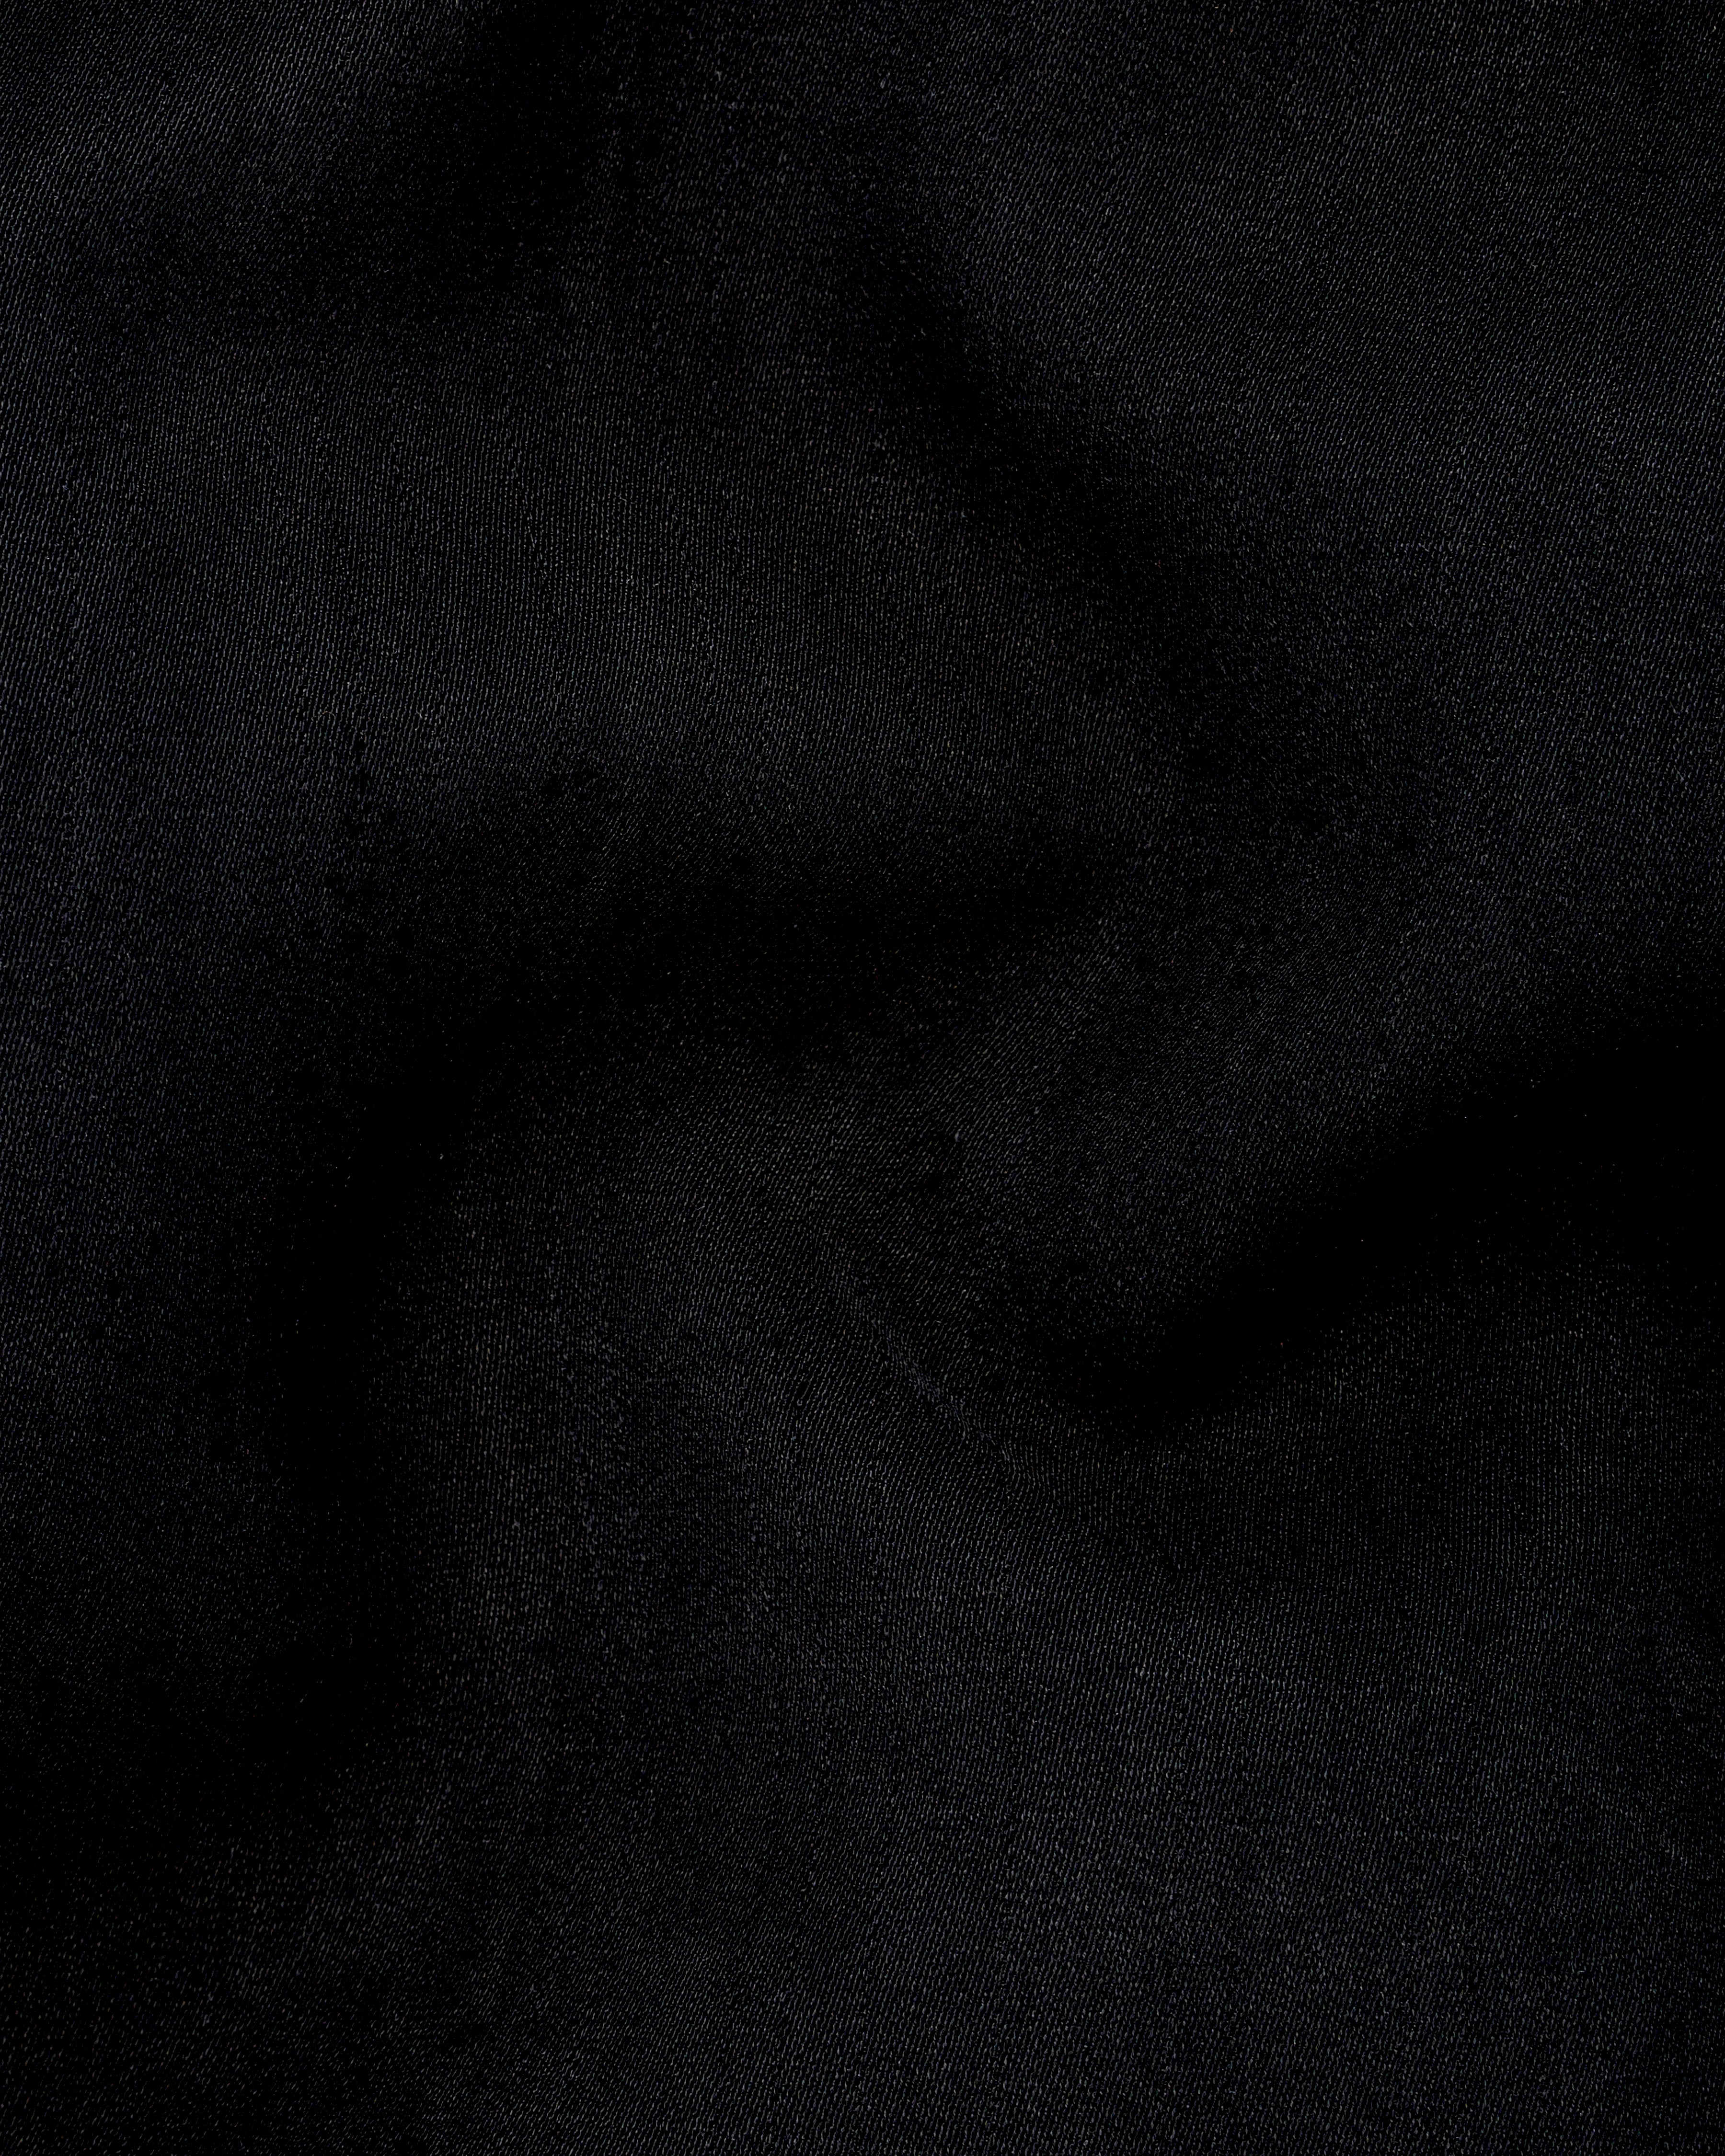 Korean Black textured Nehru Jacket WC2554-36, WC2554-38, WC2554-40, WC2554-42, WC2554-44, WC2554-46, WC2554-48, WC2554-50, WC2554-52, WC2554-54, WC2554-55, WC2554-58, WC2554-60